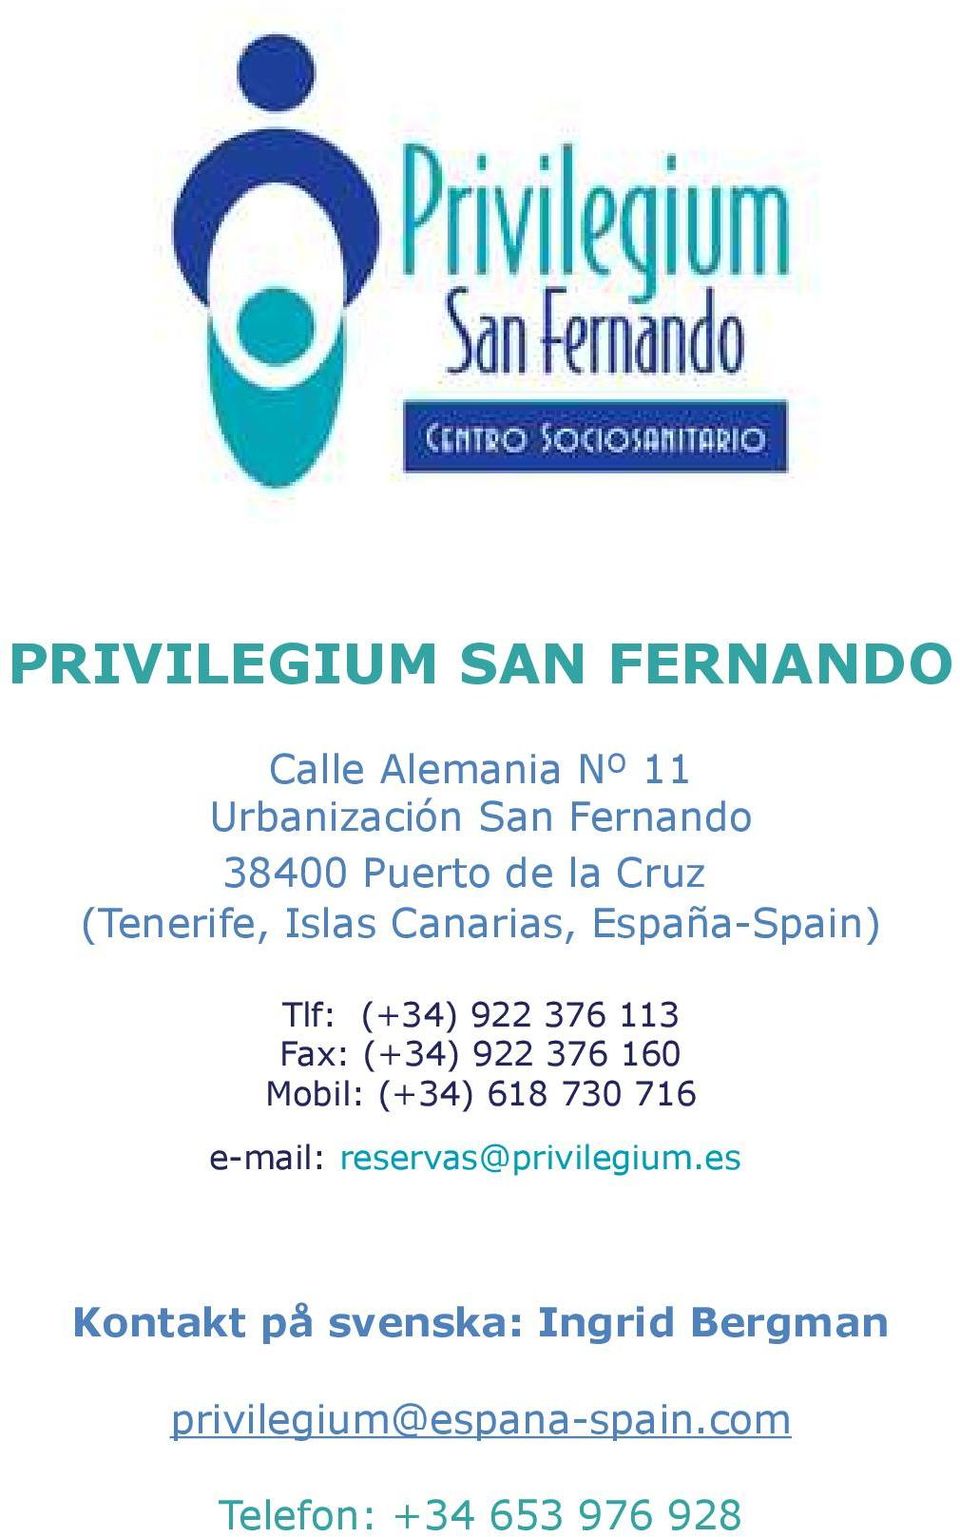 Fax: (+34) 922 376 160 Mobil: (+34) 618 730 716 e-mail: reservas@privilegium.